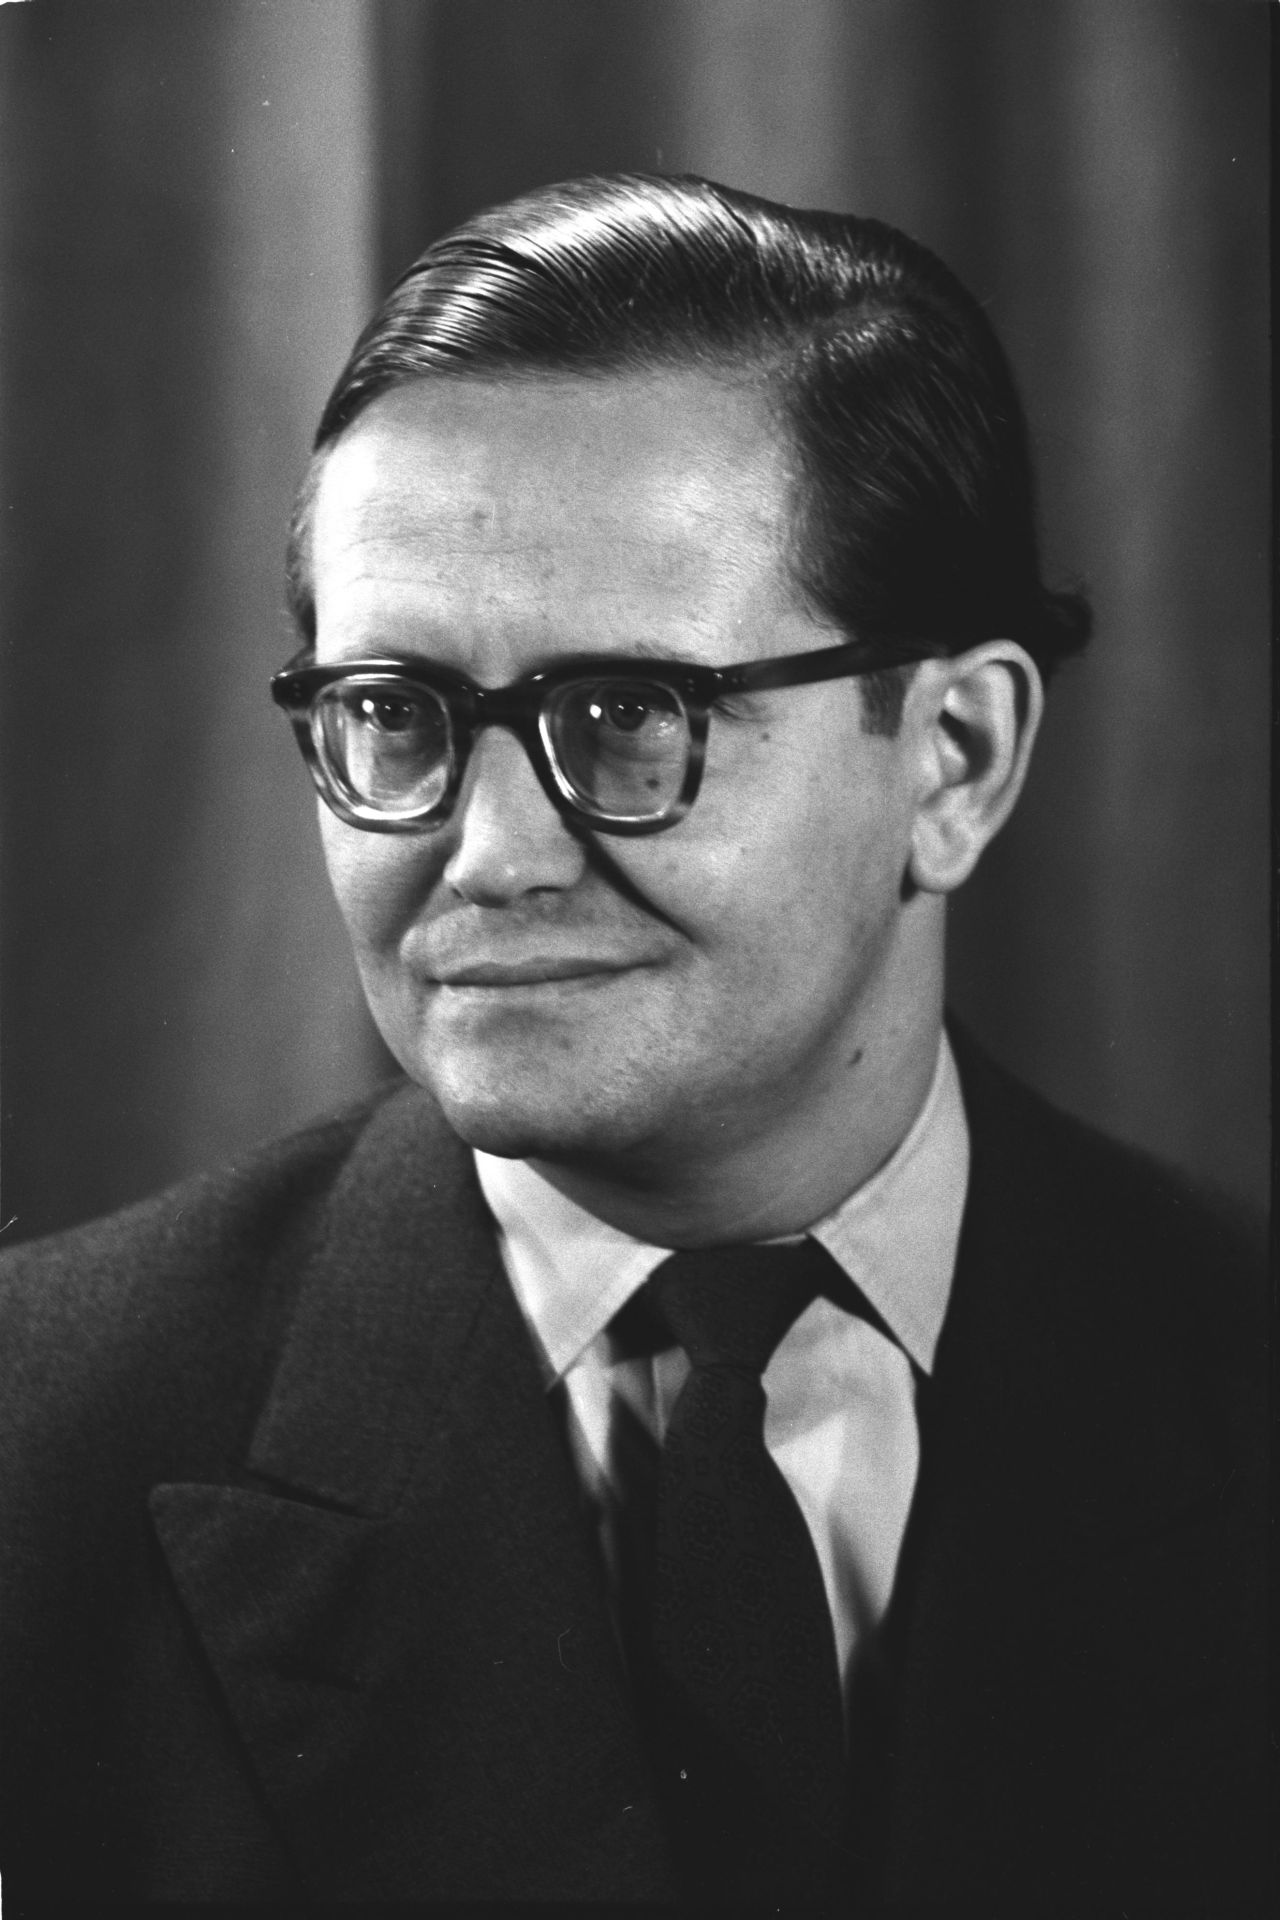 Porträtfoto von Karl-Eduard von Schnitzler, Journalist und Chefkommentator des Deutschen Fernsehfunks in der DDR, 1956.